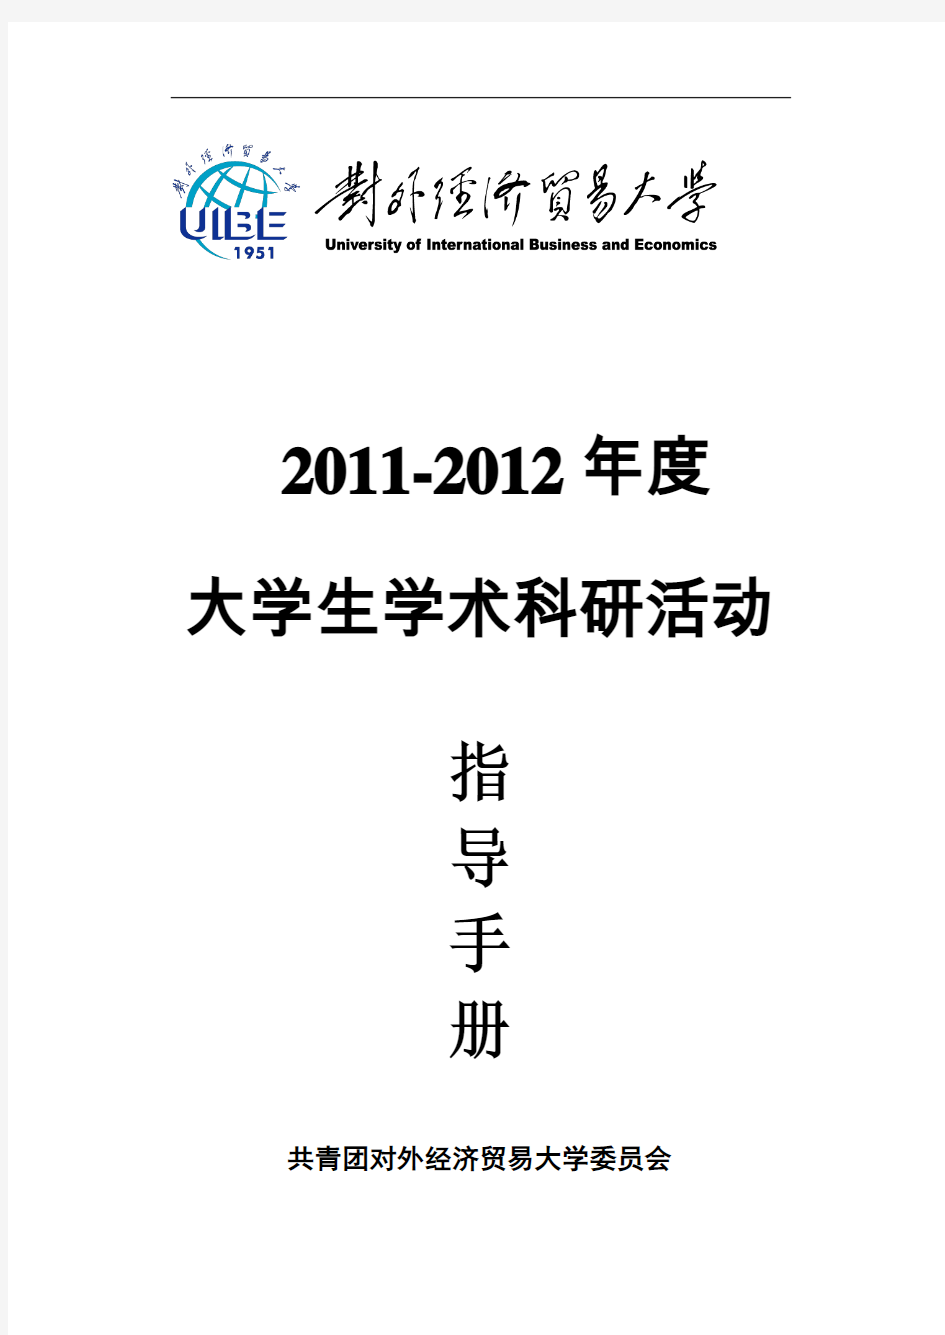 2011--2012大学生学术科研活动指导手册  Beta